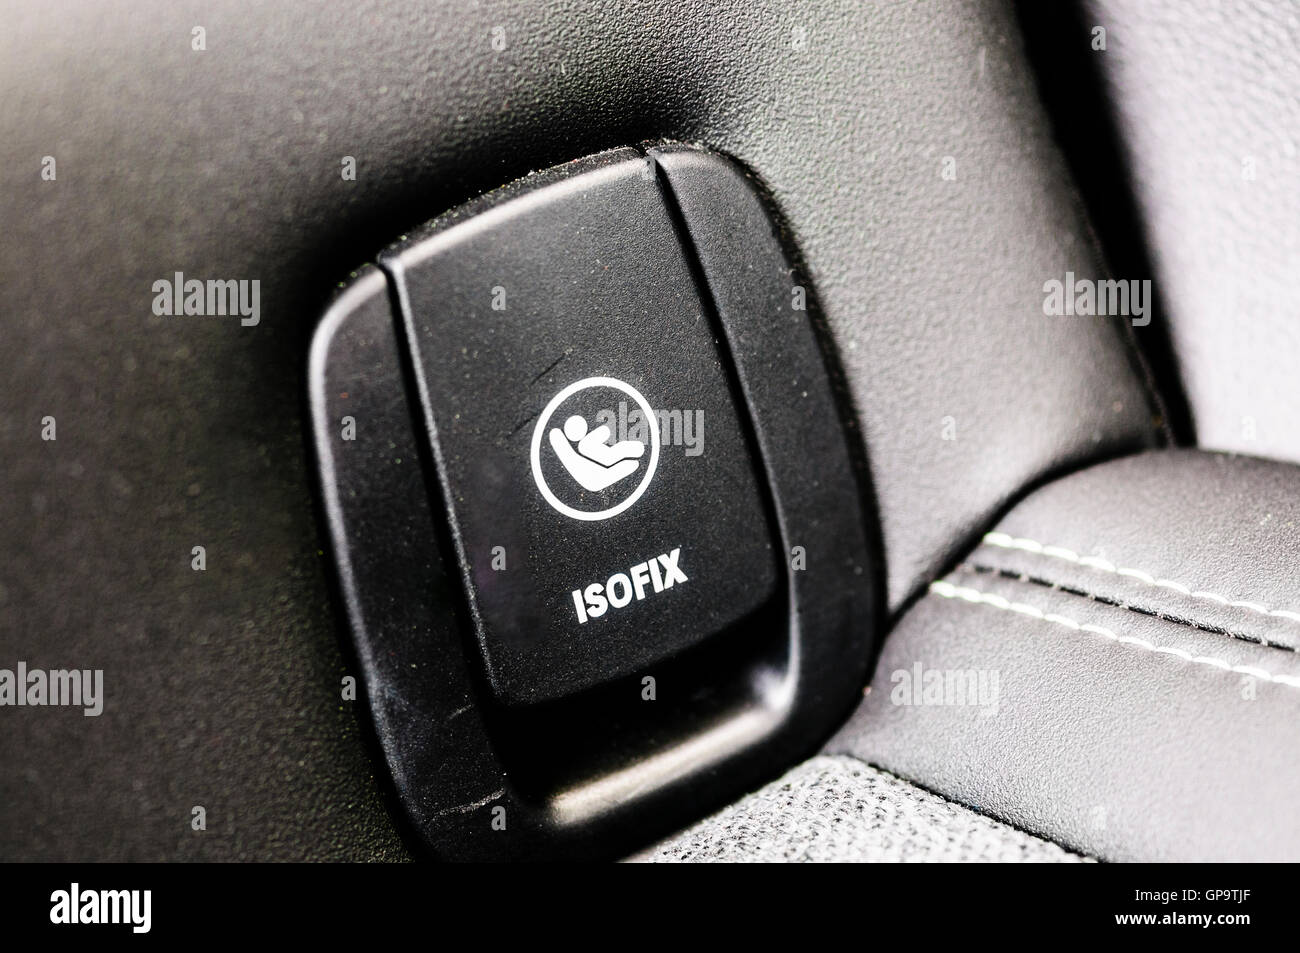 isofix rear seats